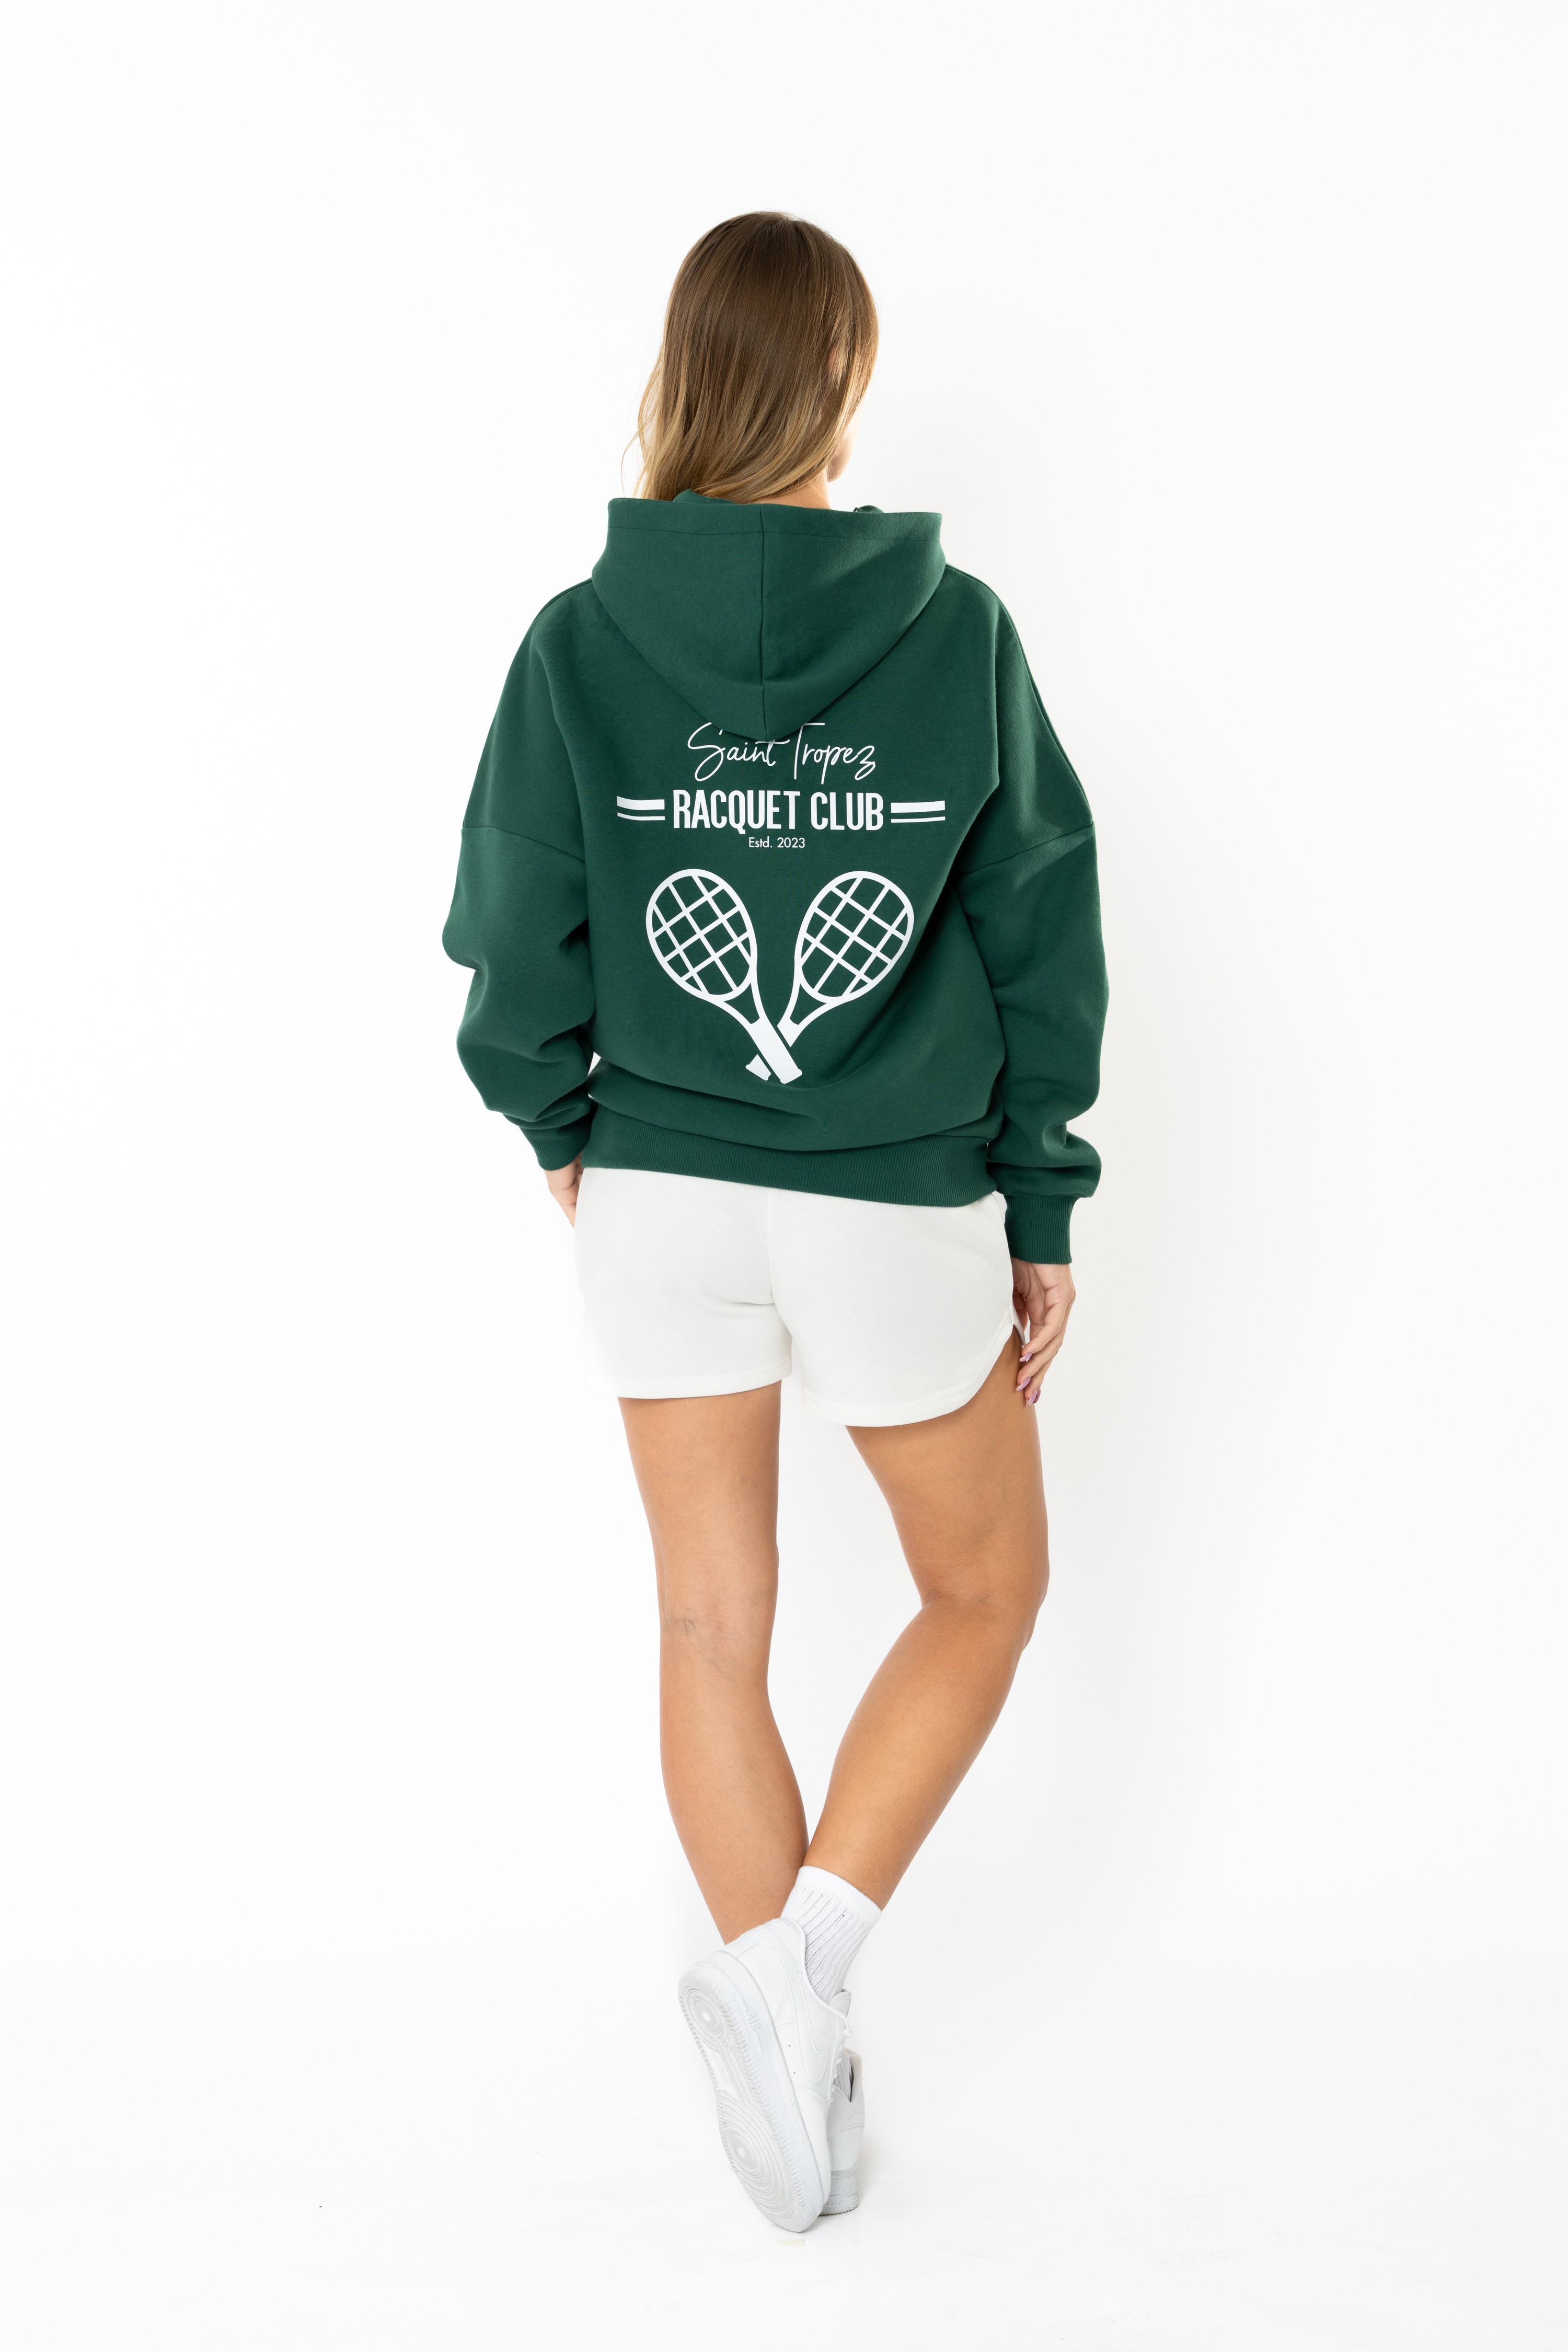 Racquet Club Oversize Hoodie Kadın - Yeşil